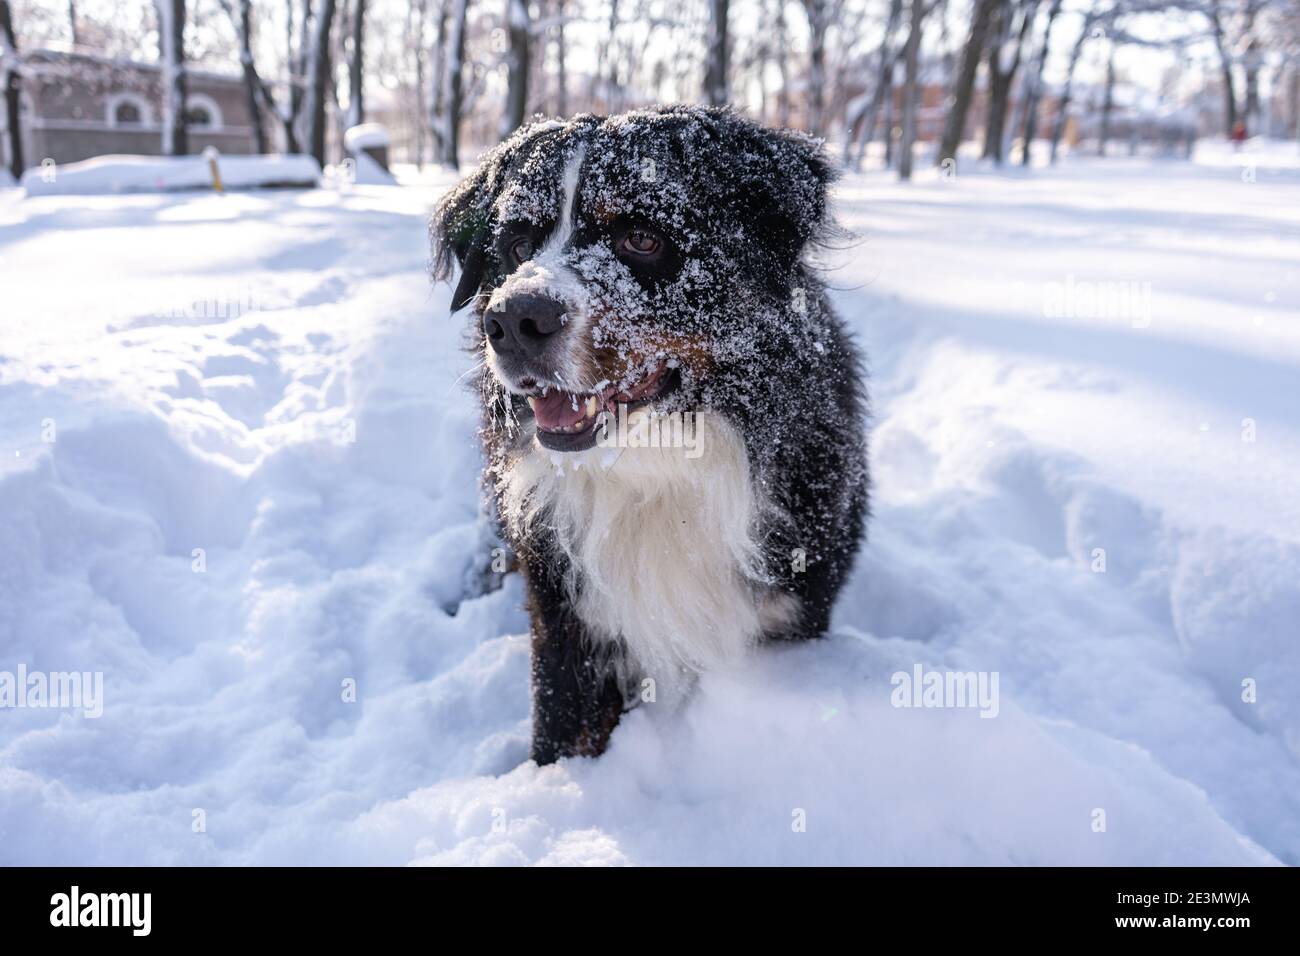 cane da montagna bernese coperto di neve che cammina attraverso le grandi nevicate. un sacco di neve sulle strade invernali Foto Stock